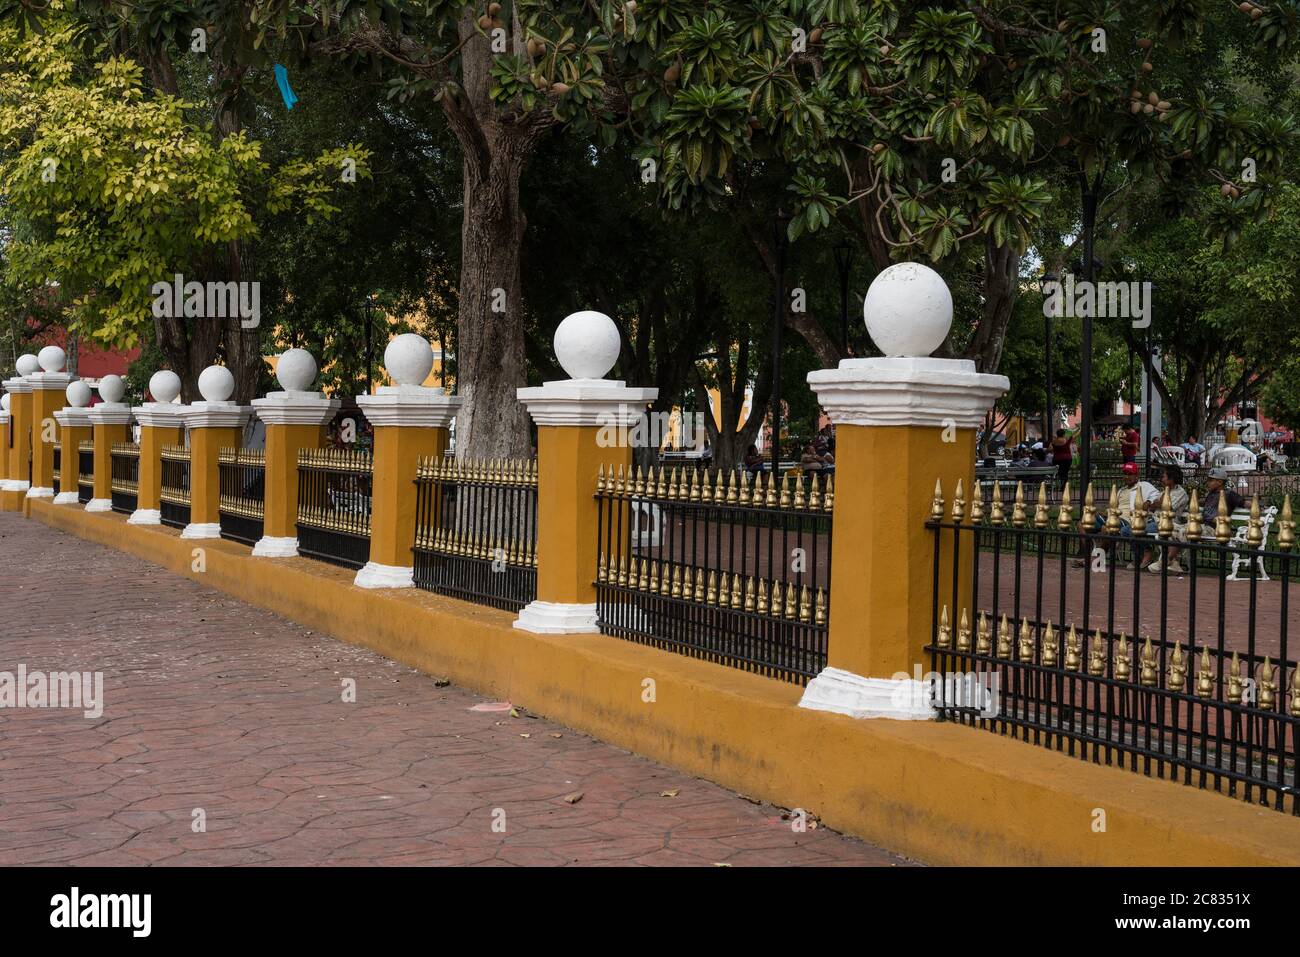 Les piliers et la clôture en fonte autour du parc Francisco Cantón Rosado dans le centre de Valladolid, Yucatan, Mexique. Banque D'Images